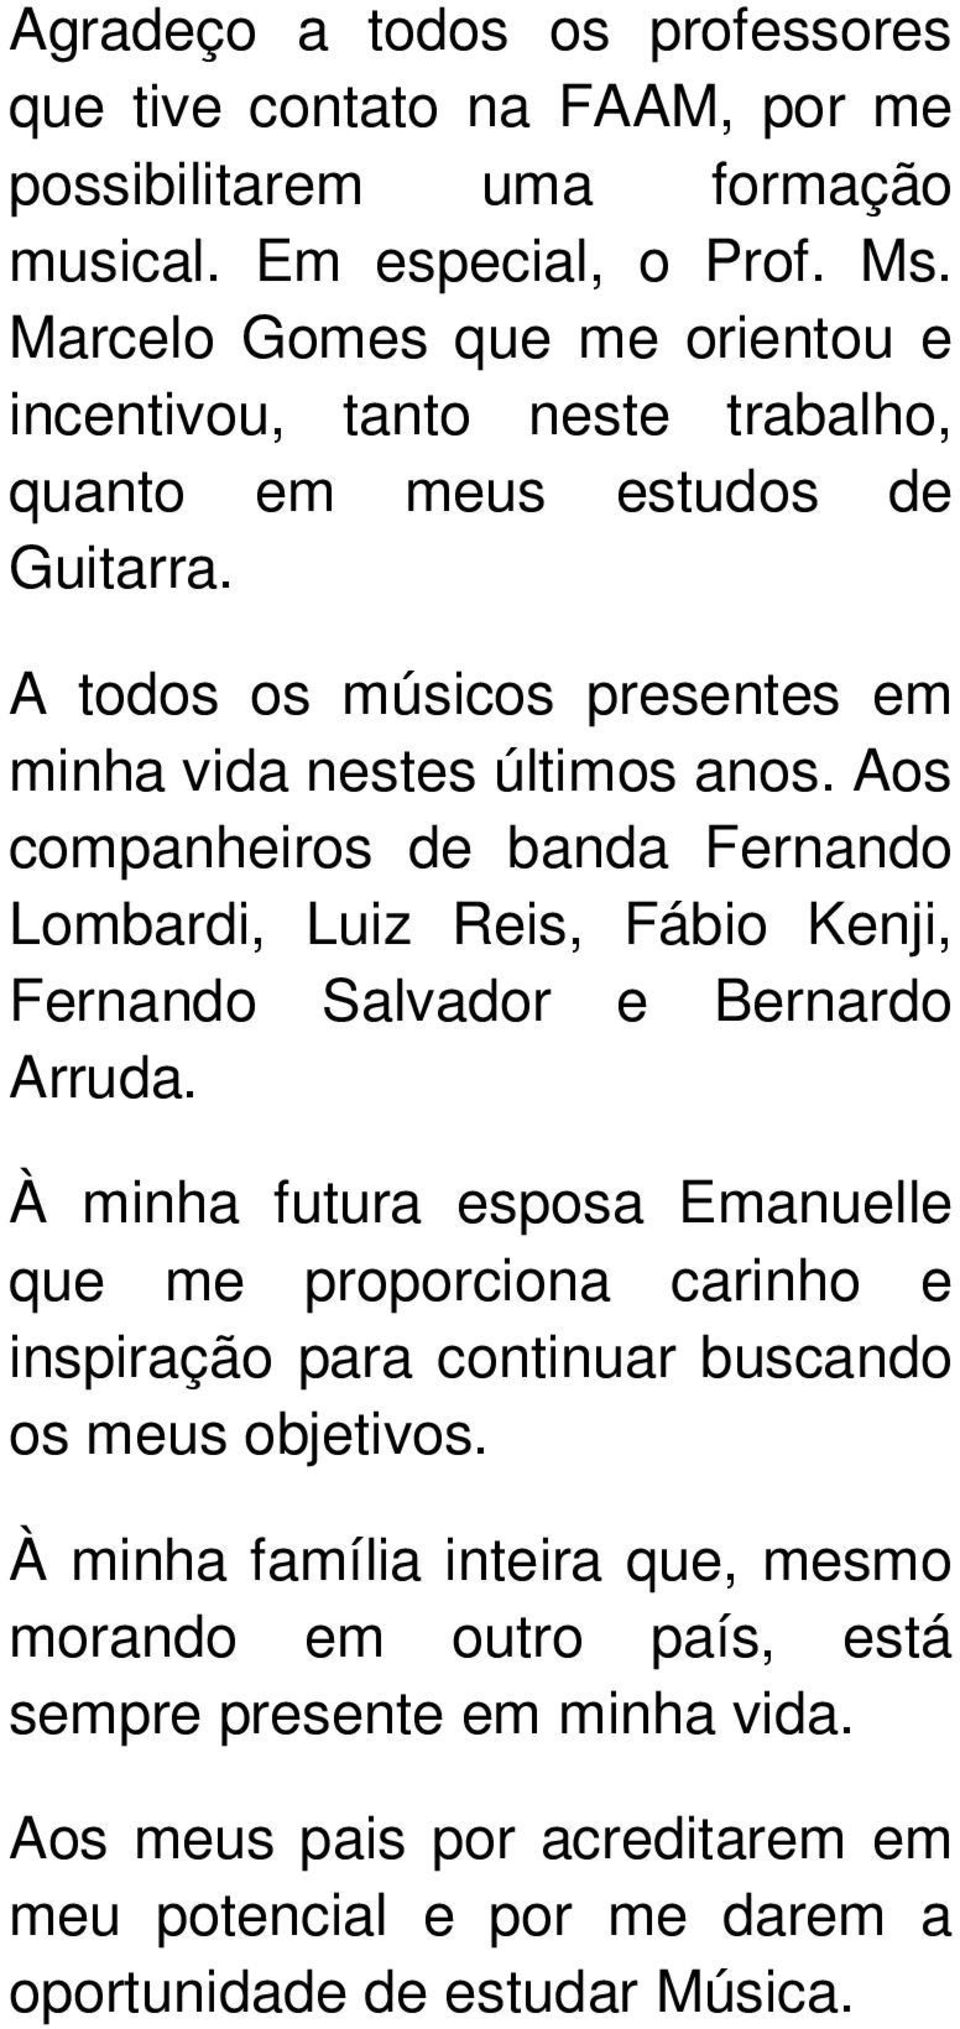 Aos companheiros de banda Fernando Lombardi, Luiz Reis, Fábio Kenji, Fernando Salvador e Bernardo Arruda.